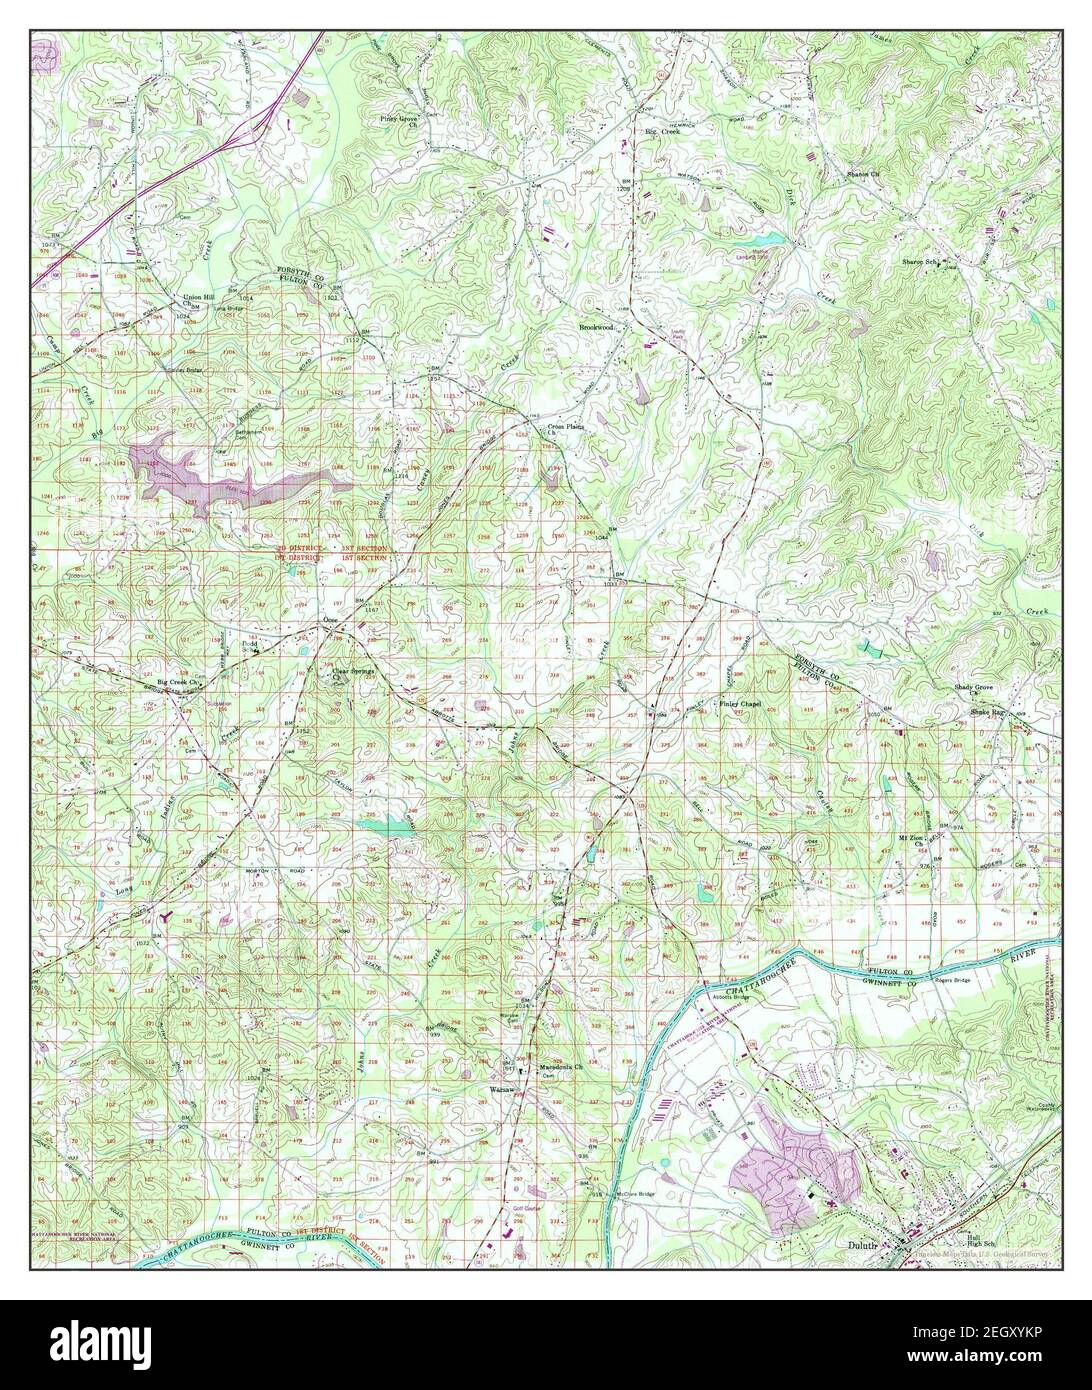 Duluth, Georgia, Karte 1956, 1:24000, Vereinigte Staaten von Amerika von Timeless Maps, Daten U.S. Geological Survey Stockfoto